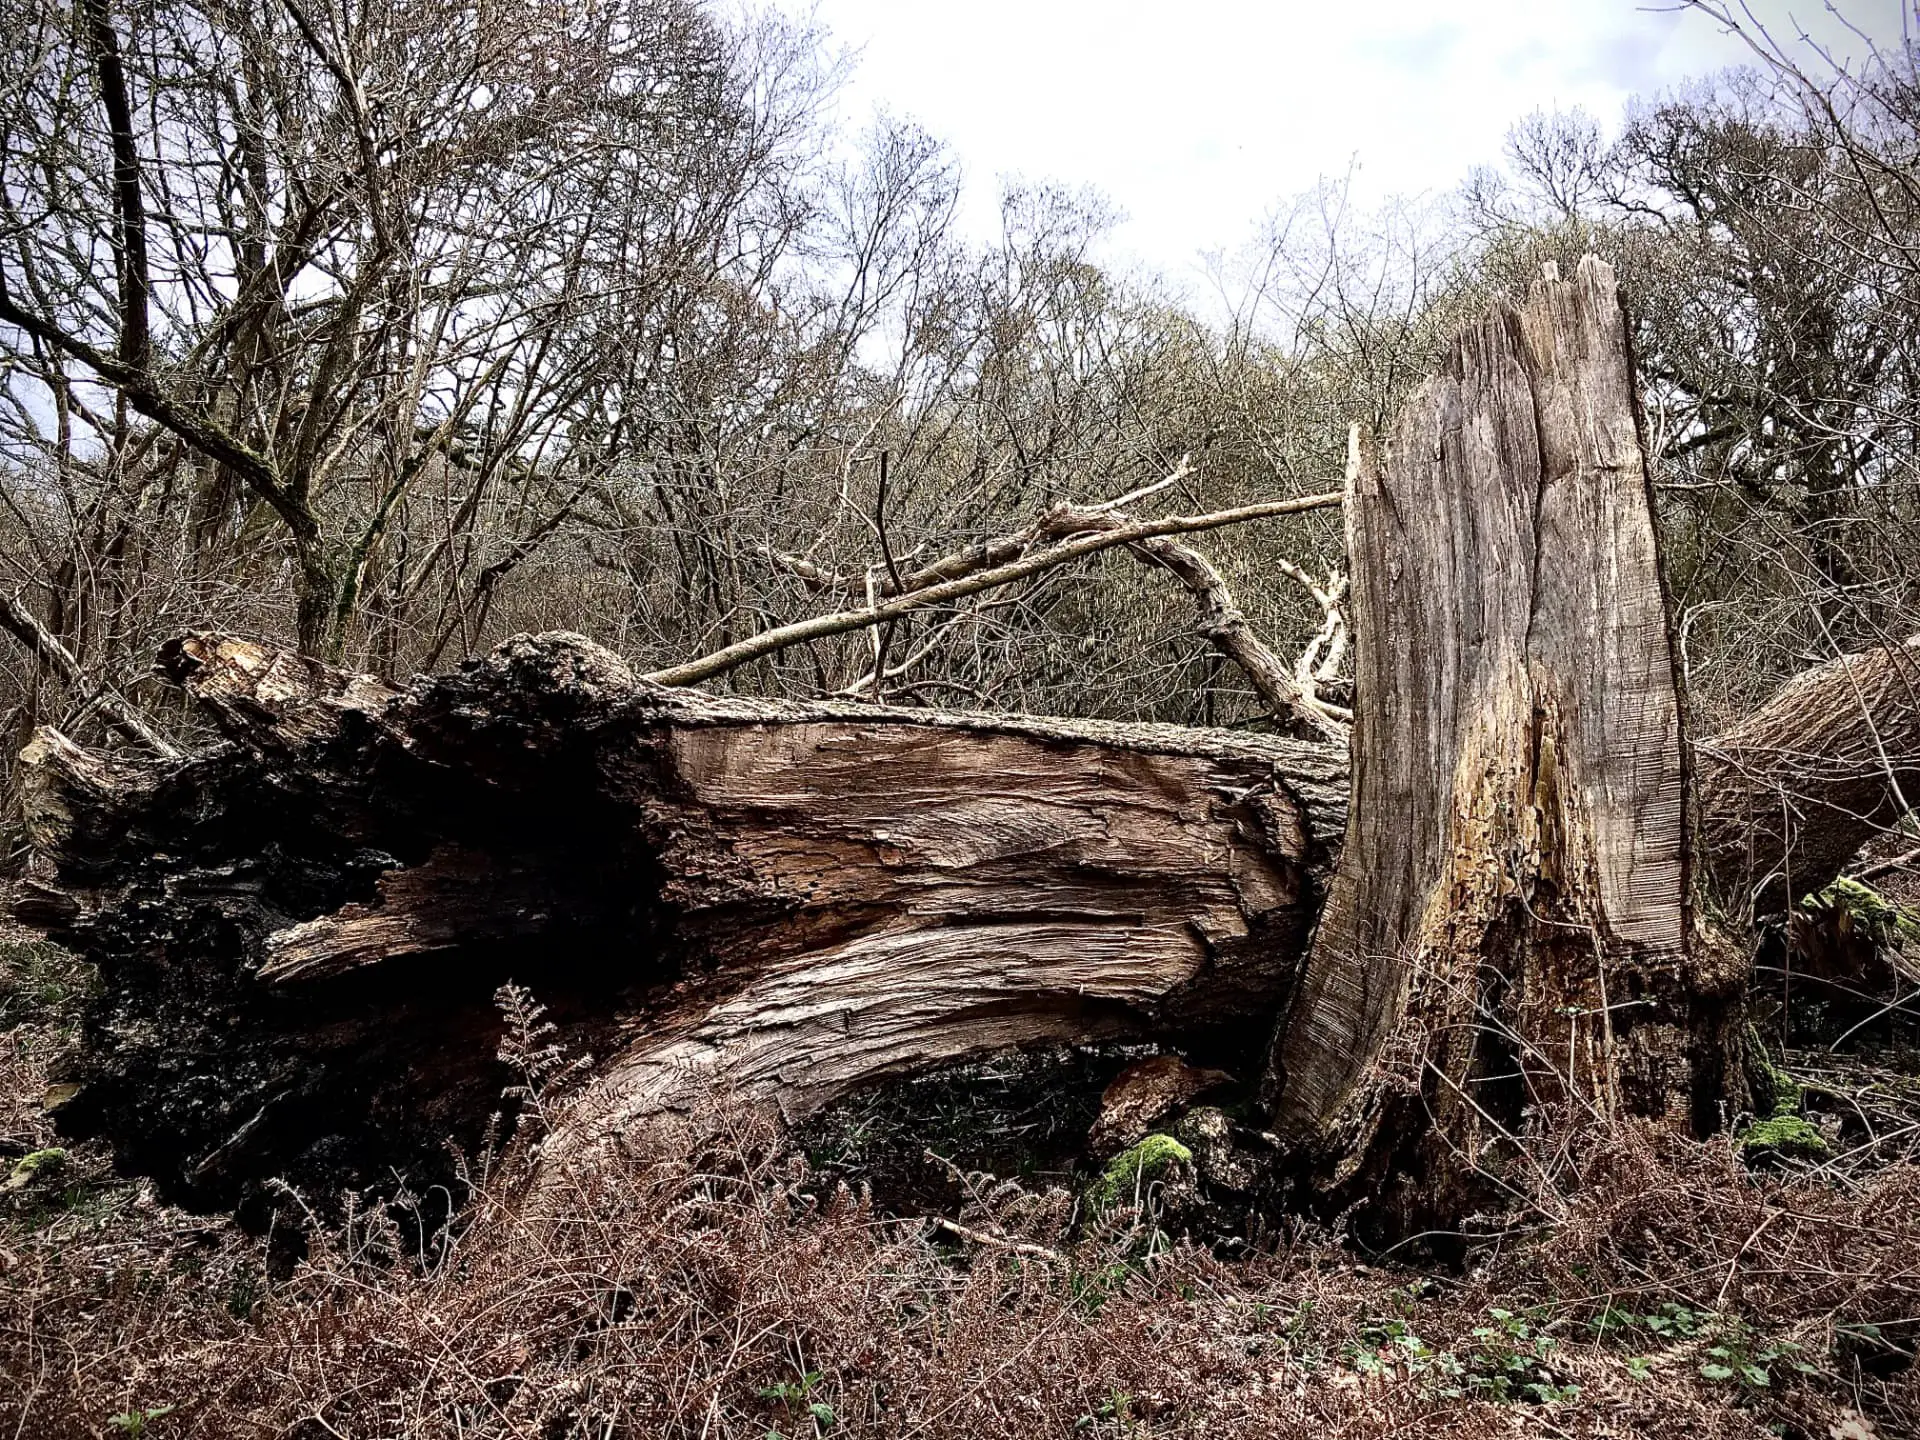 Demise of a mature Ash tree by Jon Jewett